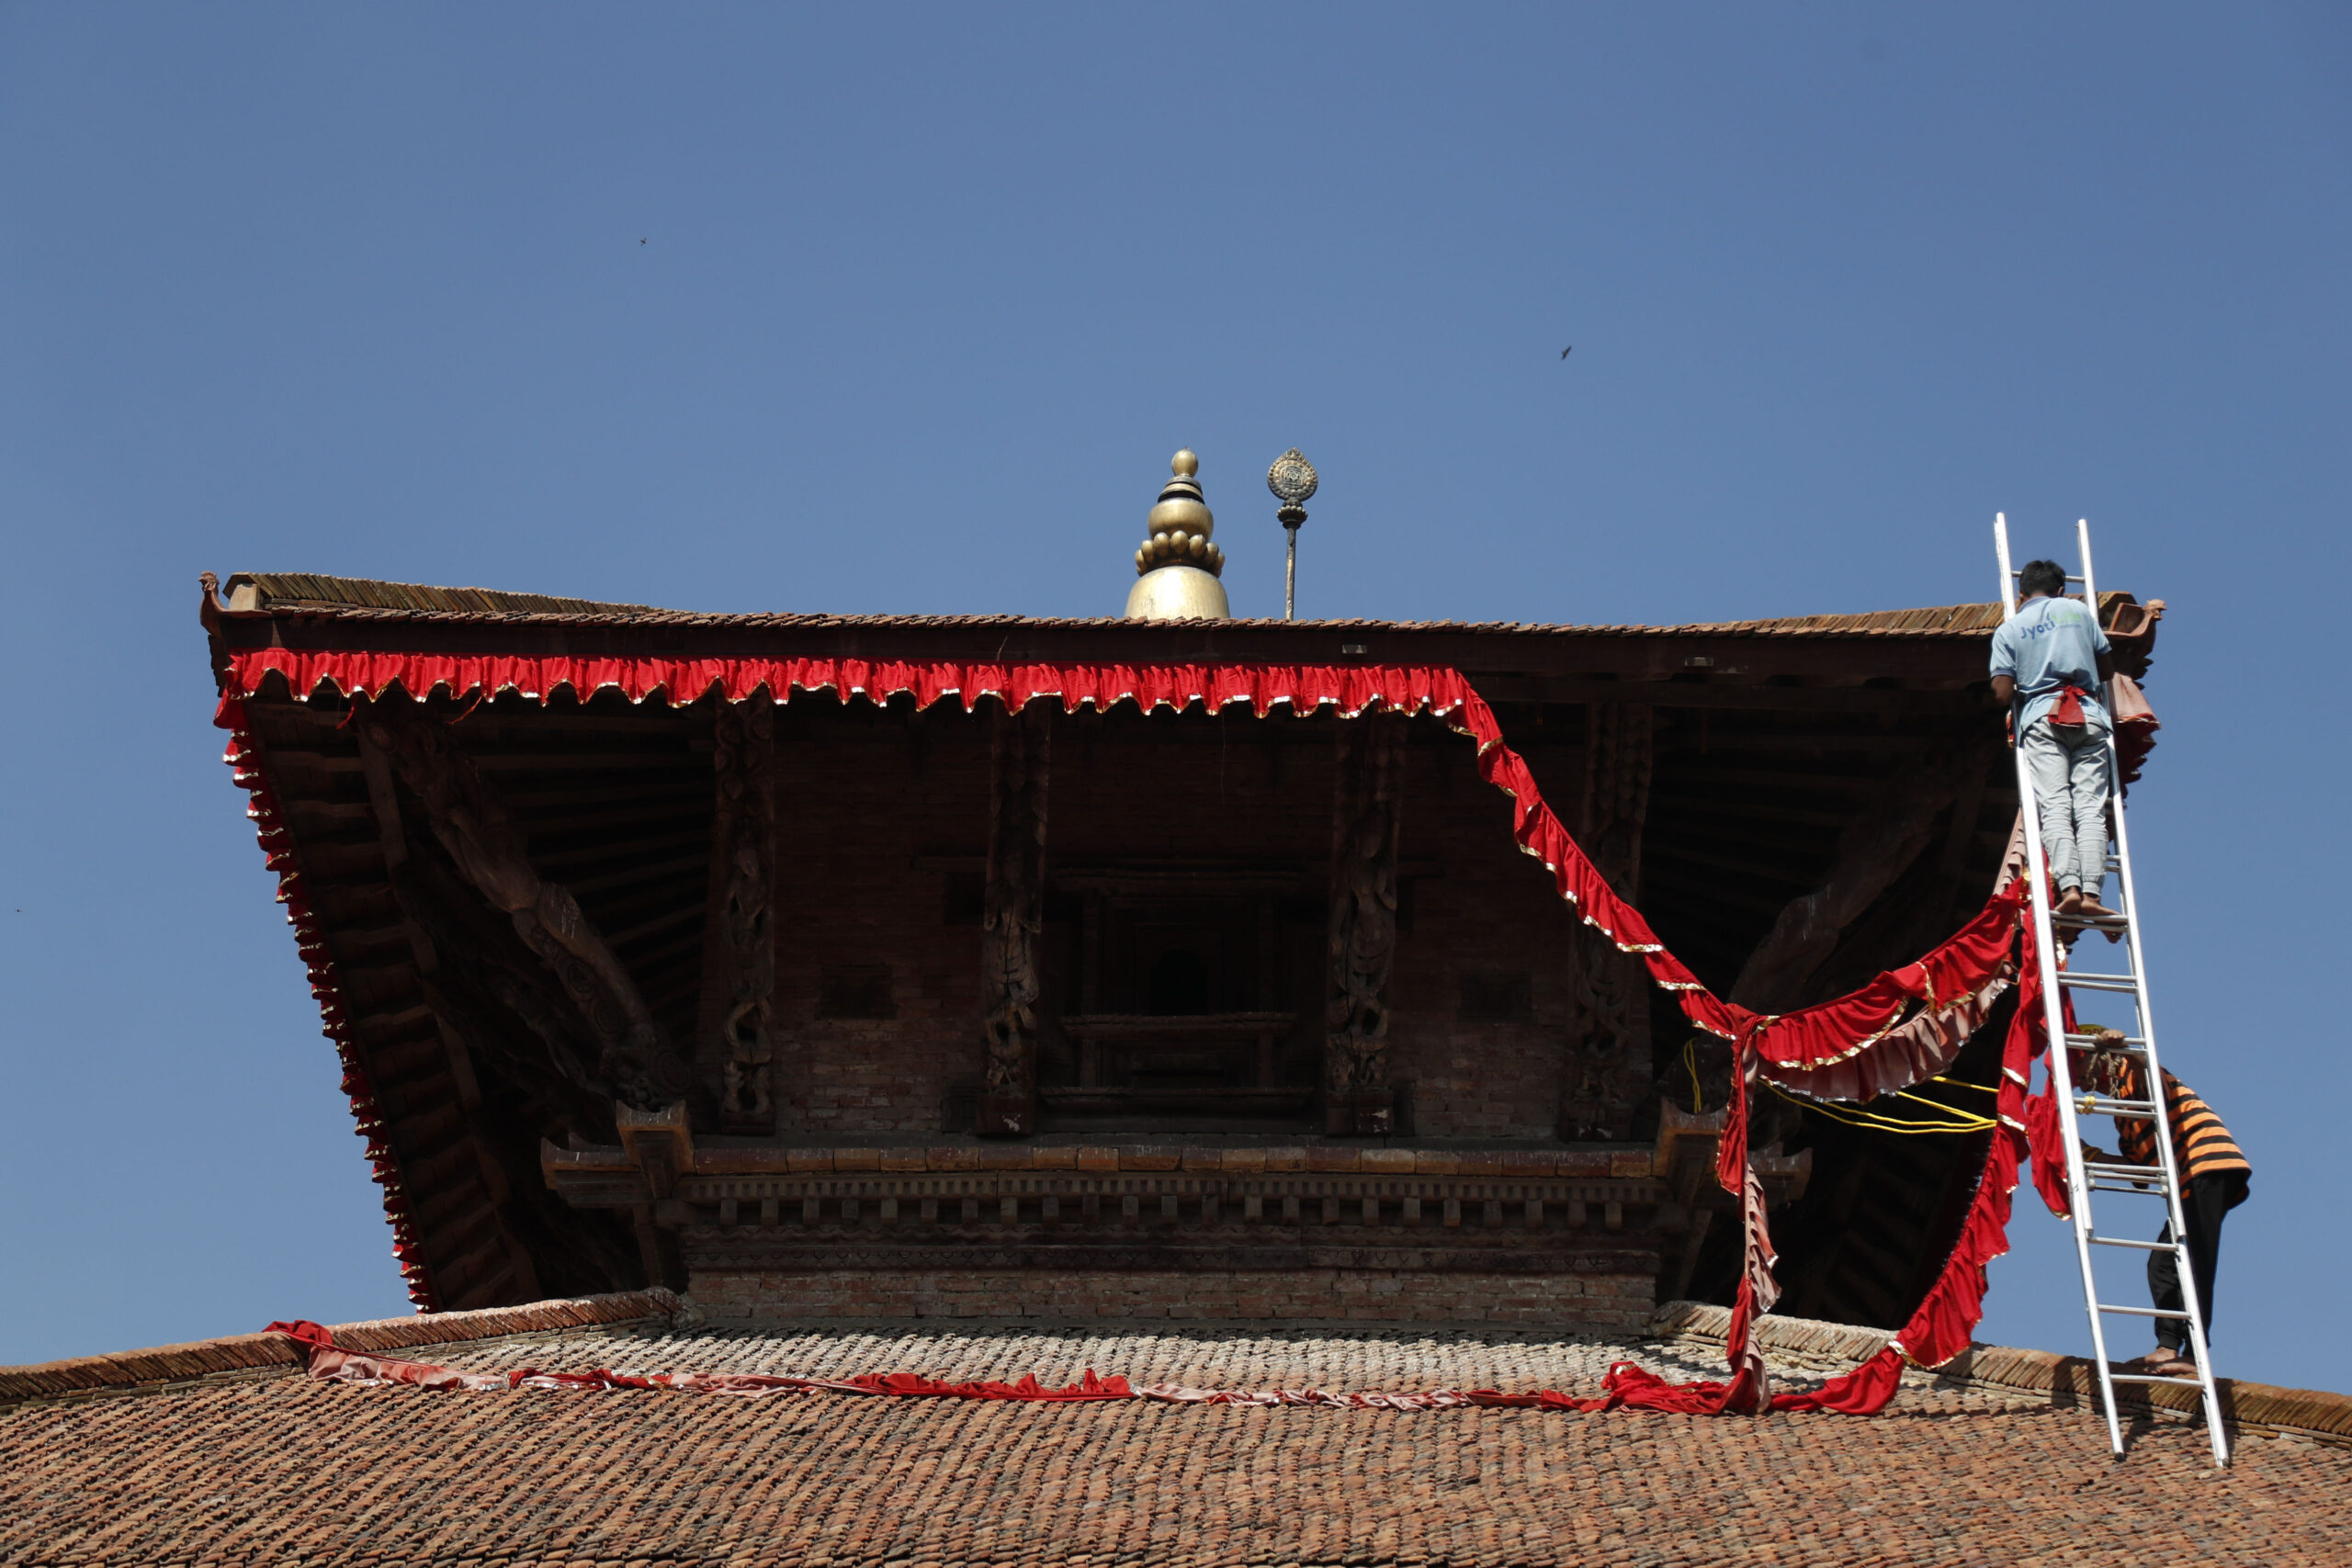 New flag adorns Basantapur Durbar Square temple as festivals near (photos)